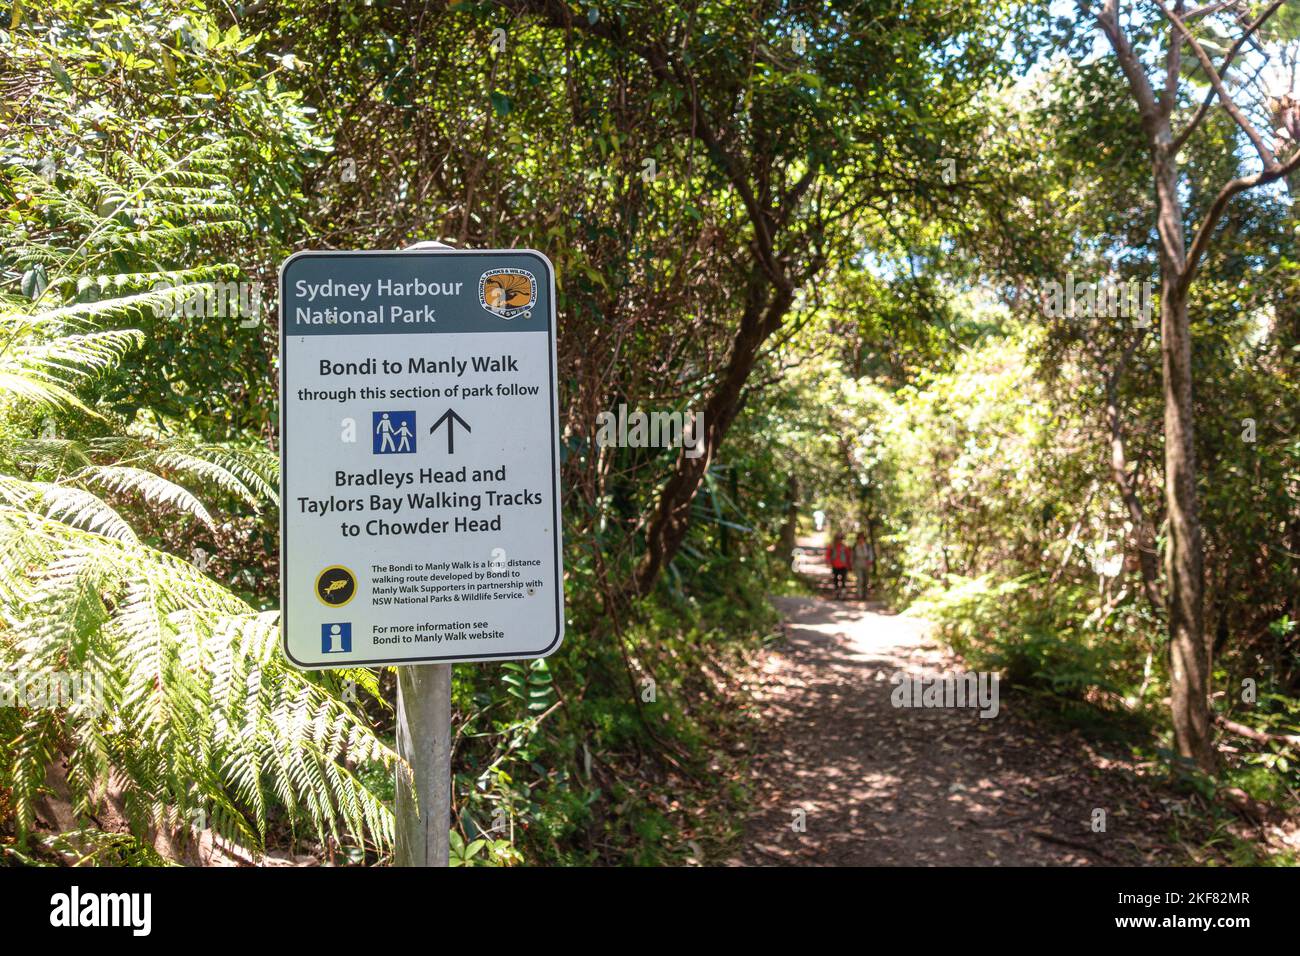 The Bradleys Head Walking Track section of the Bondi to Manly Walk dans le parc national du port de Sydney, en Australie Banque D'Images